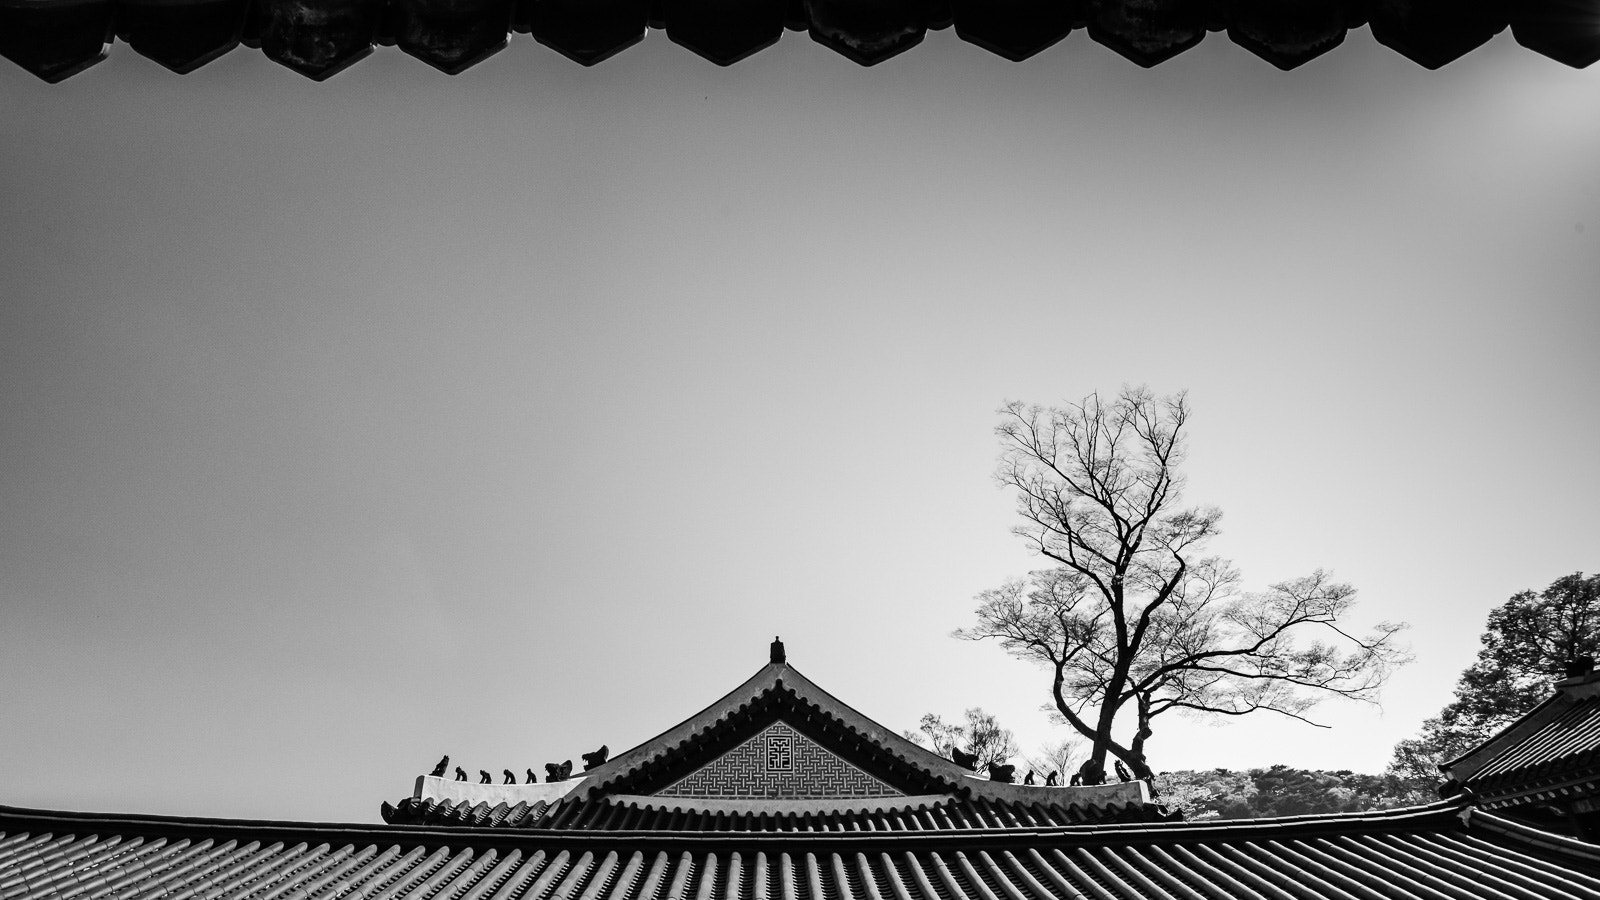 Nikon D750 sample photo. Old palace, namhansanseong, korea photography